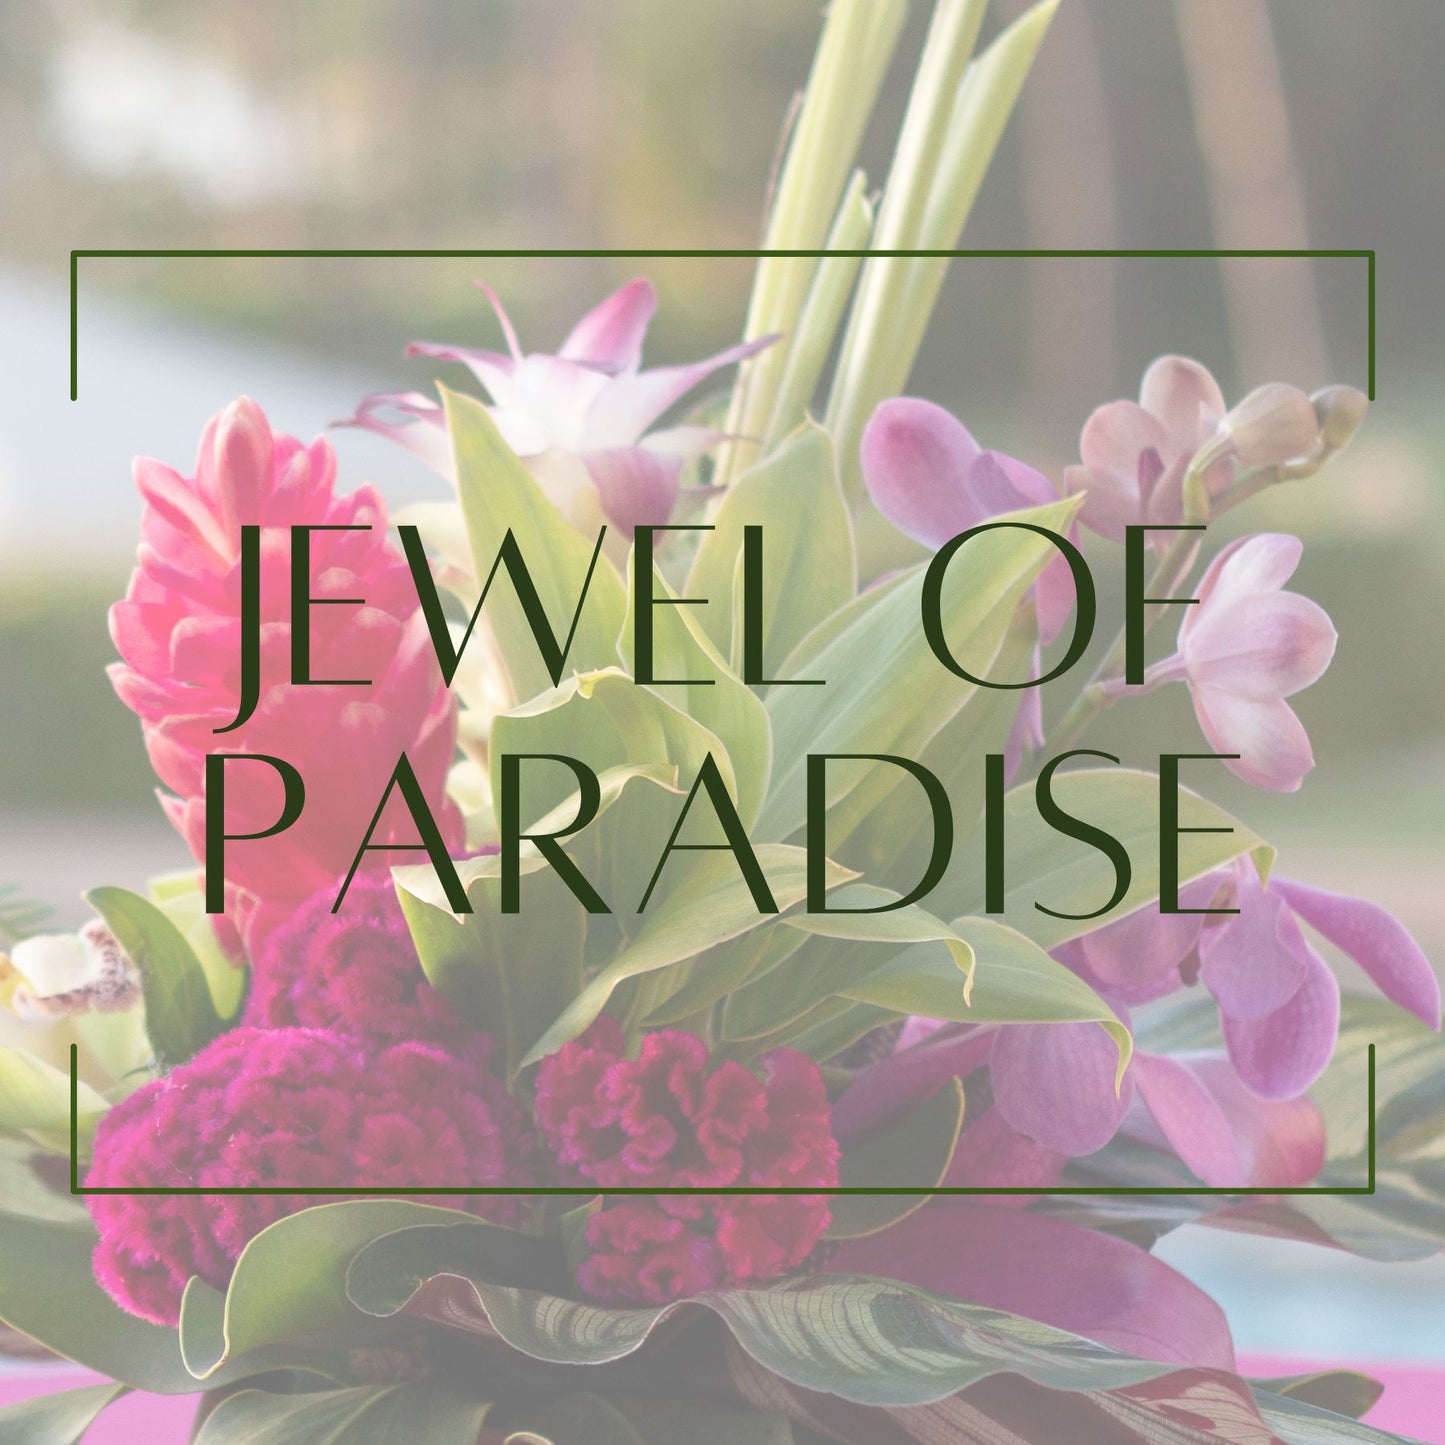 Jewel of Paradise - Accent Arrangement